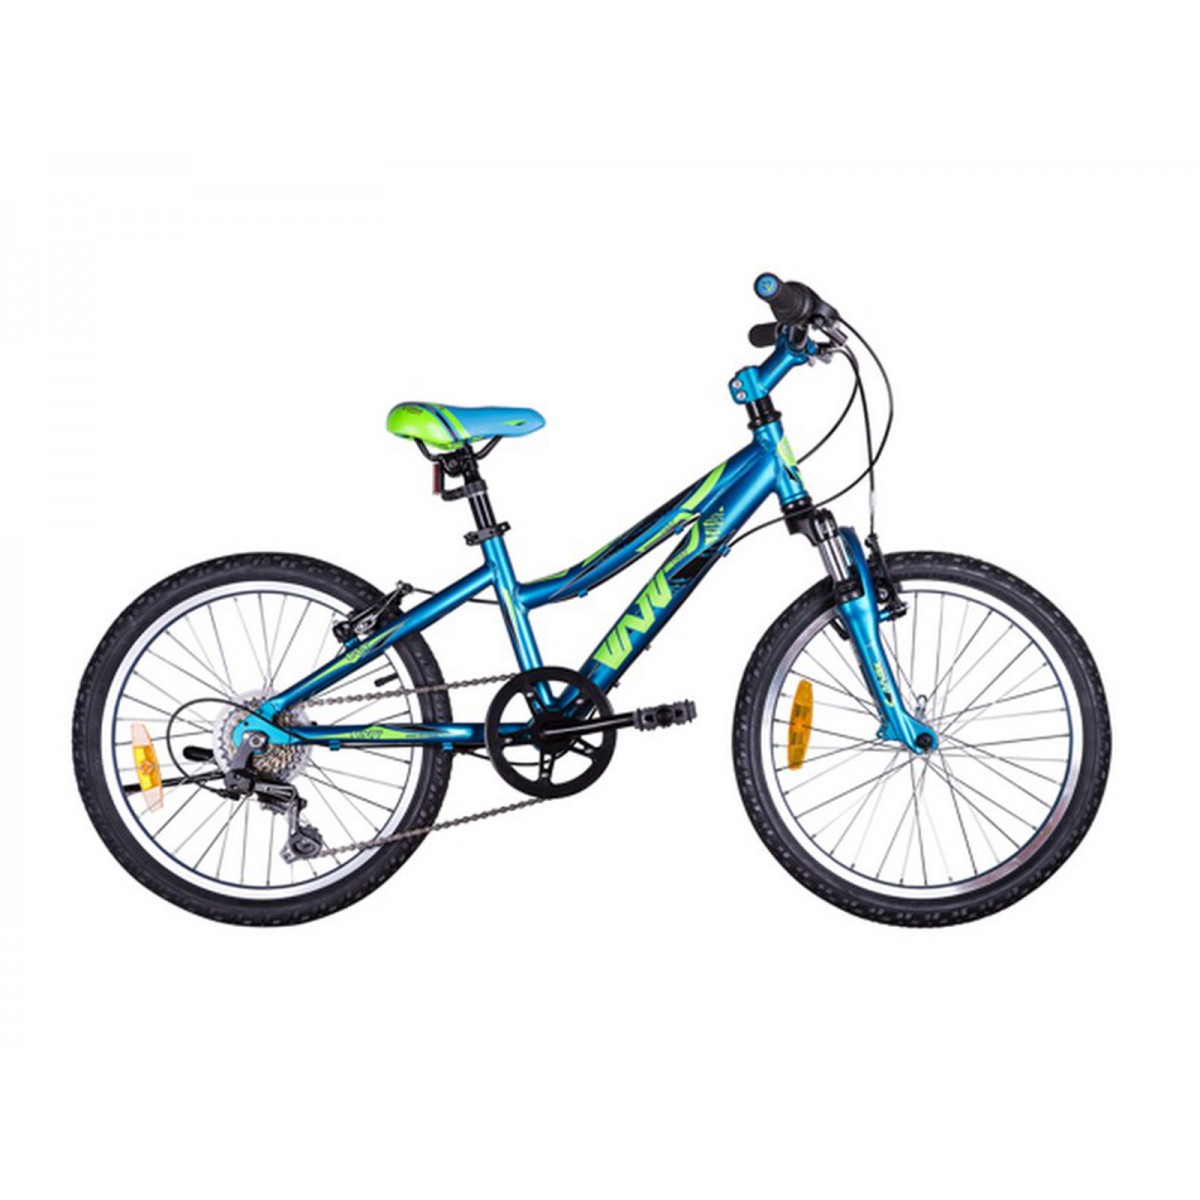 Легкие велосипеды 20. Велосипед VNV. Навигатор океан велосипед. Велосипед Shift. Подростковый горный (MTB) велосипед Cross Speedster girl 20 (2015).